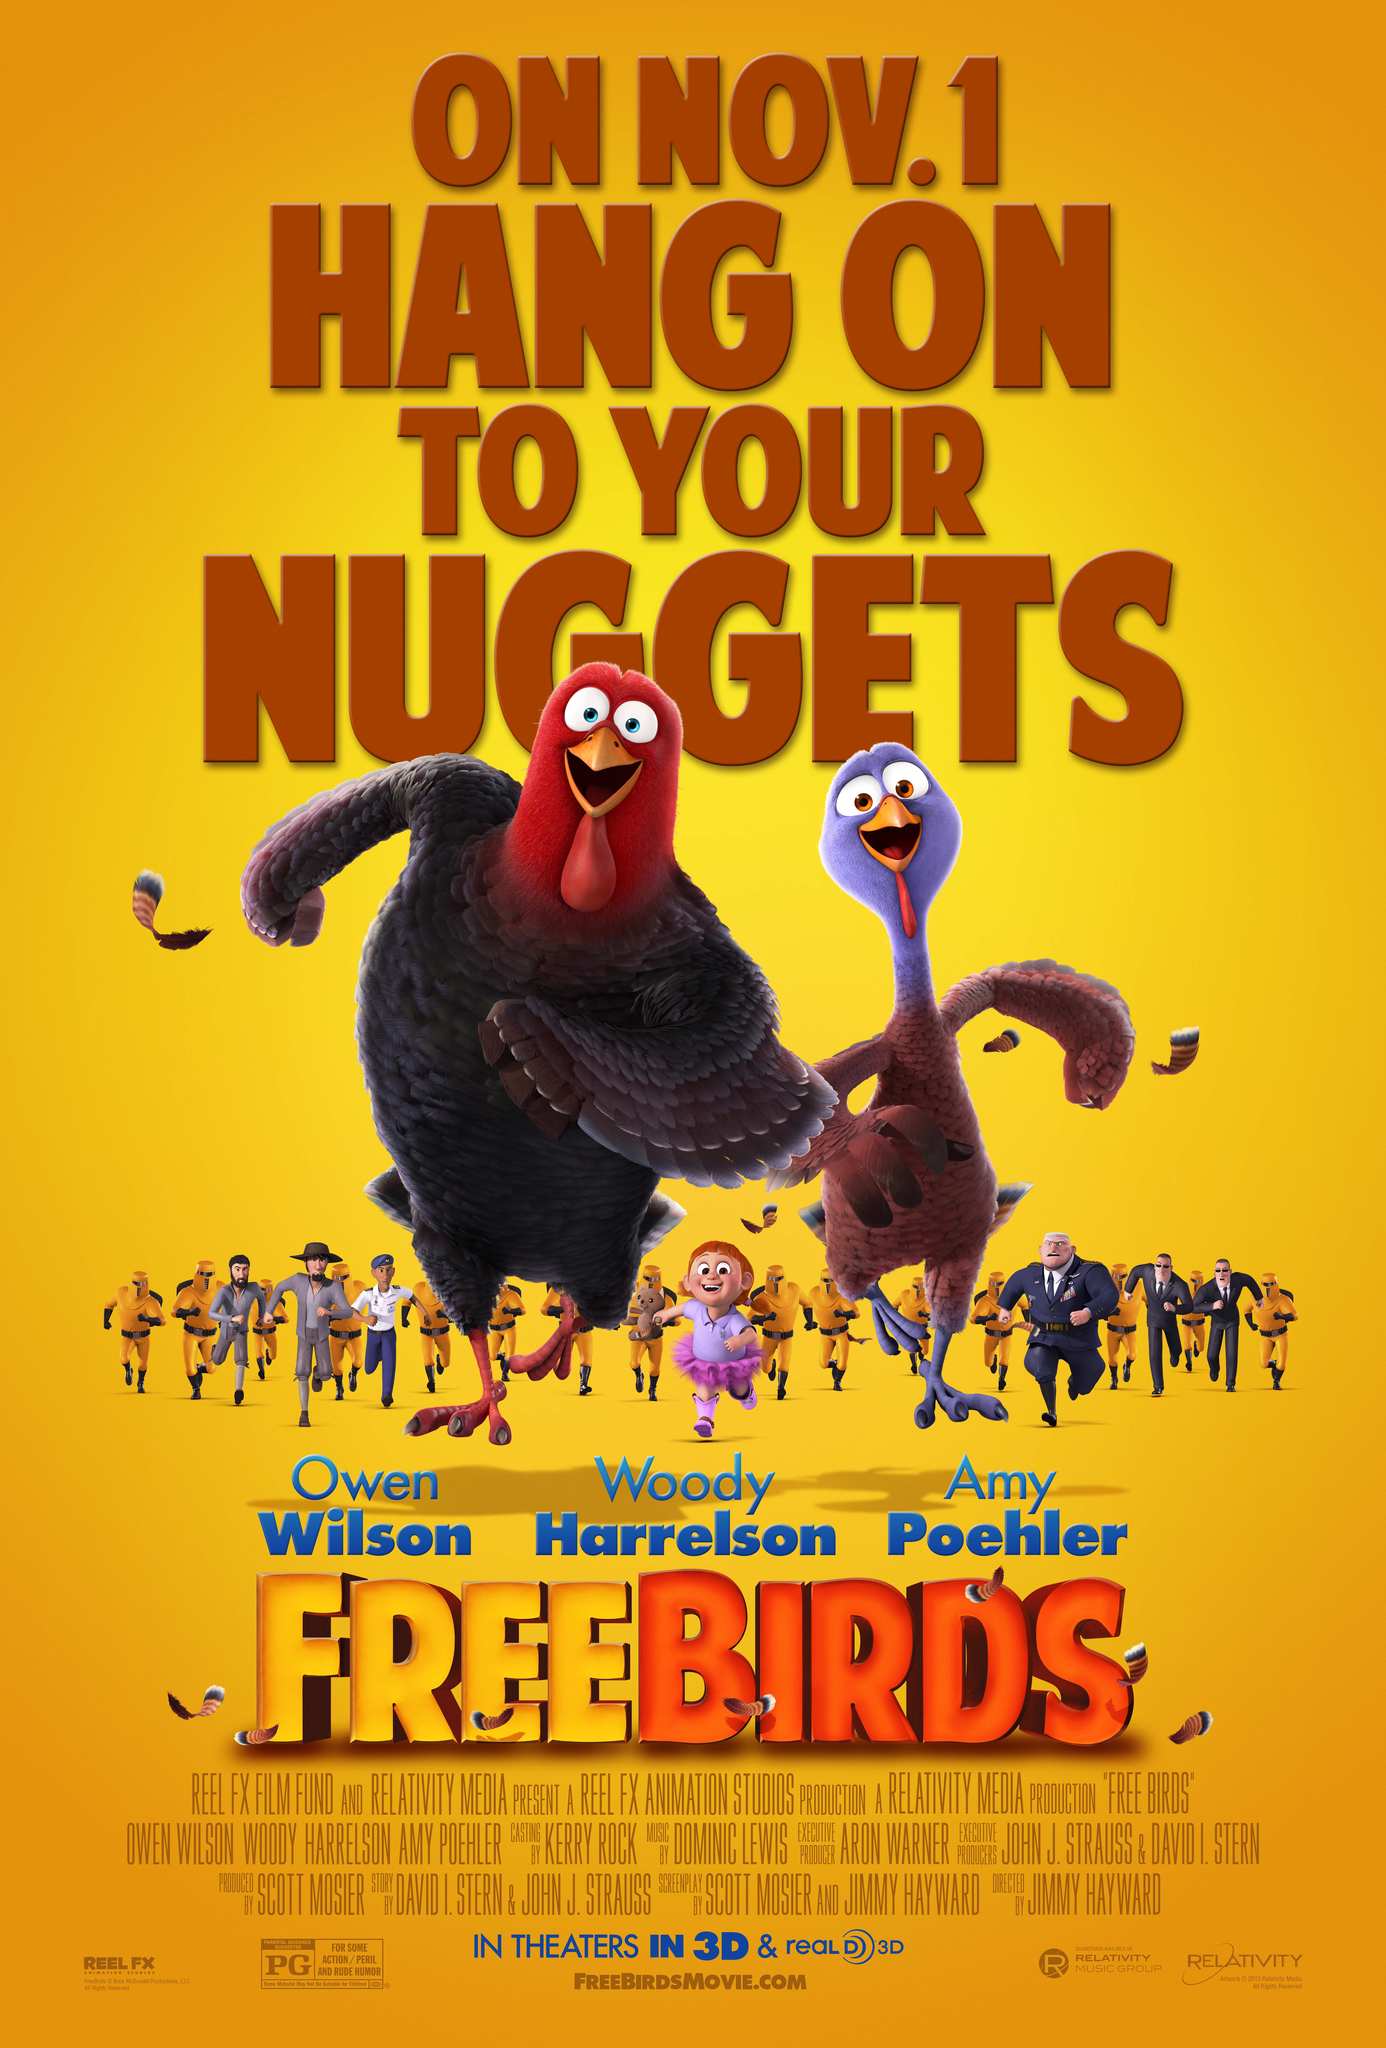 ดูหนังออนไลน์ฟรี Free Birds (2013) เกรียนไก่ซ่าส์ทะลุมิติ